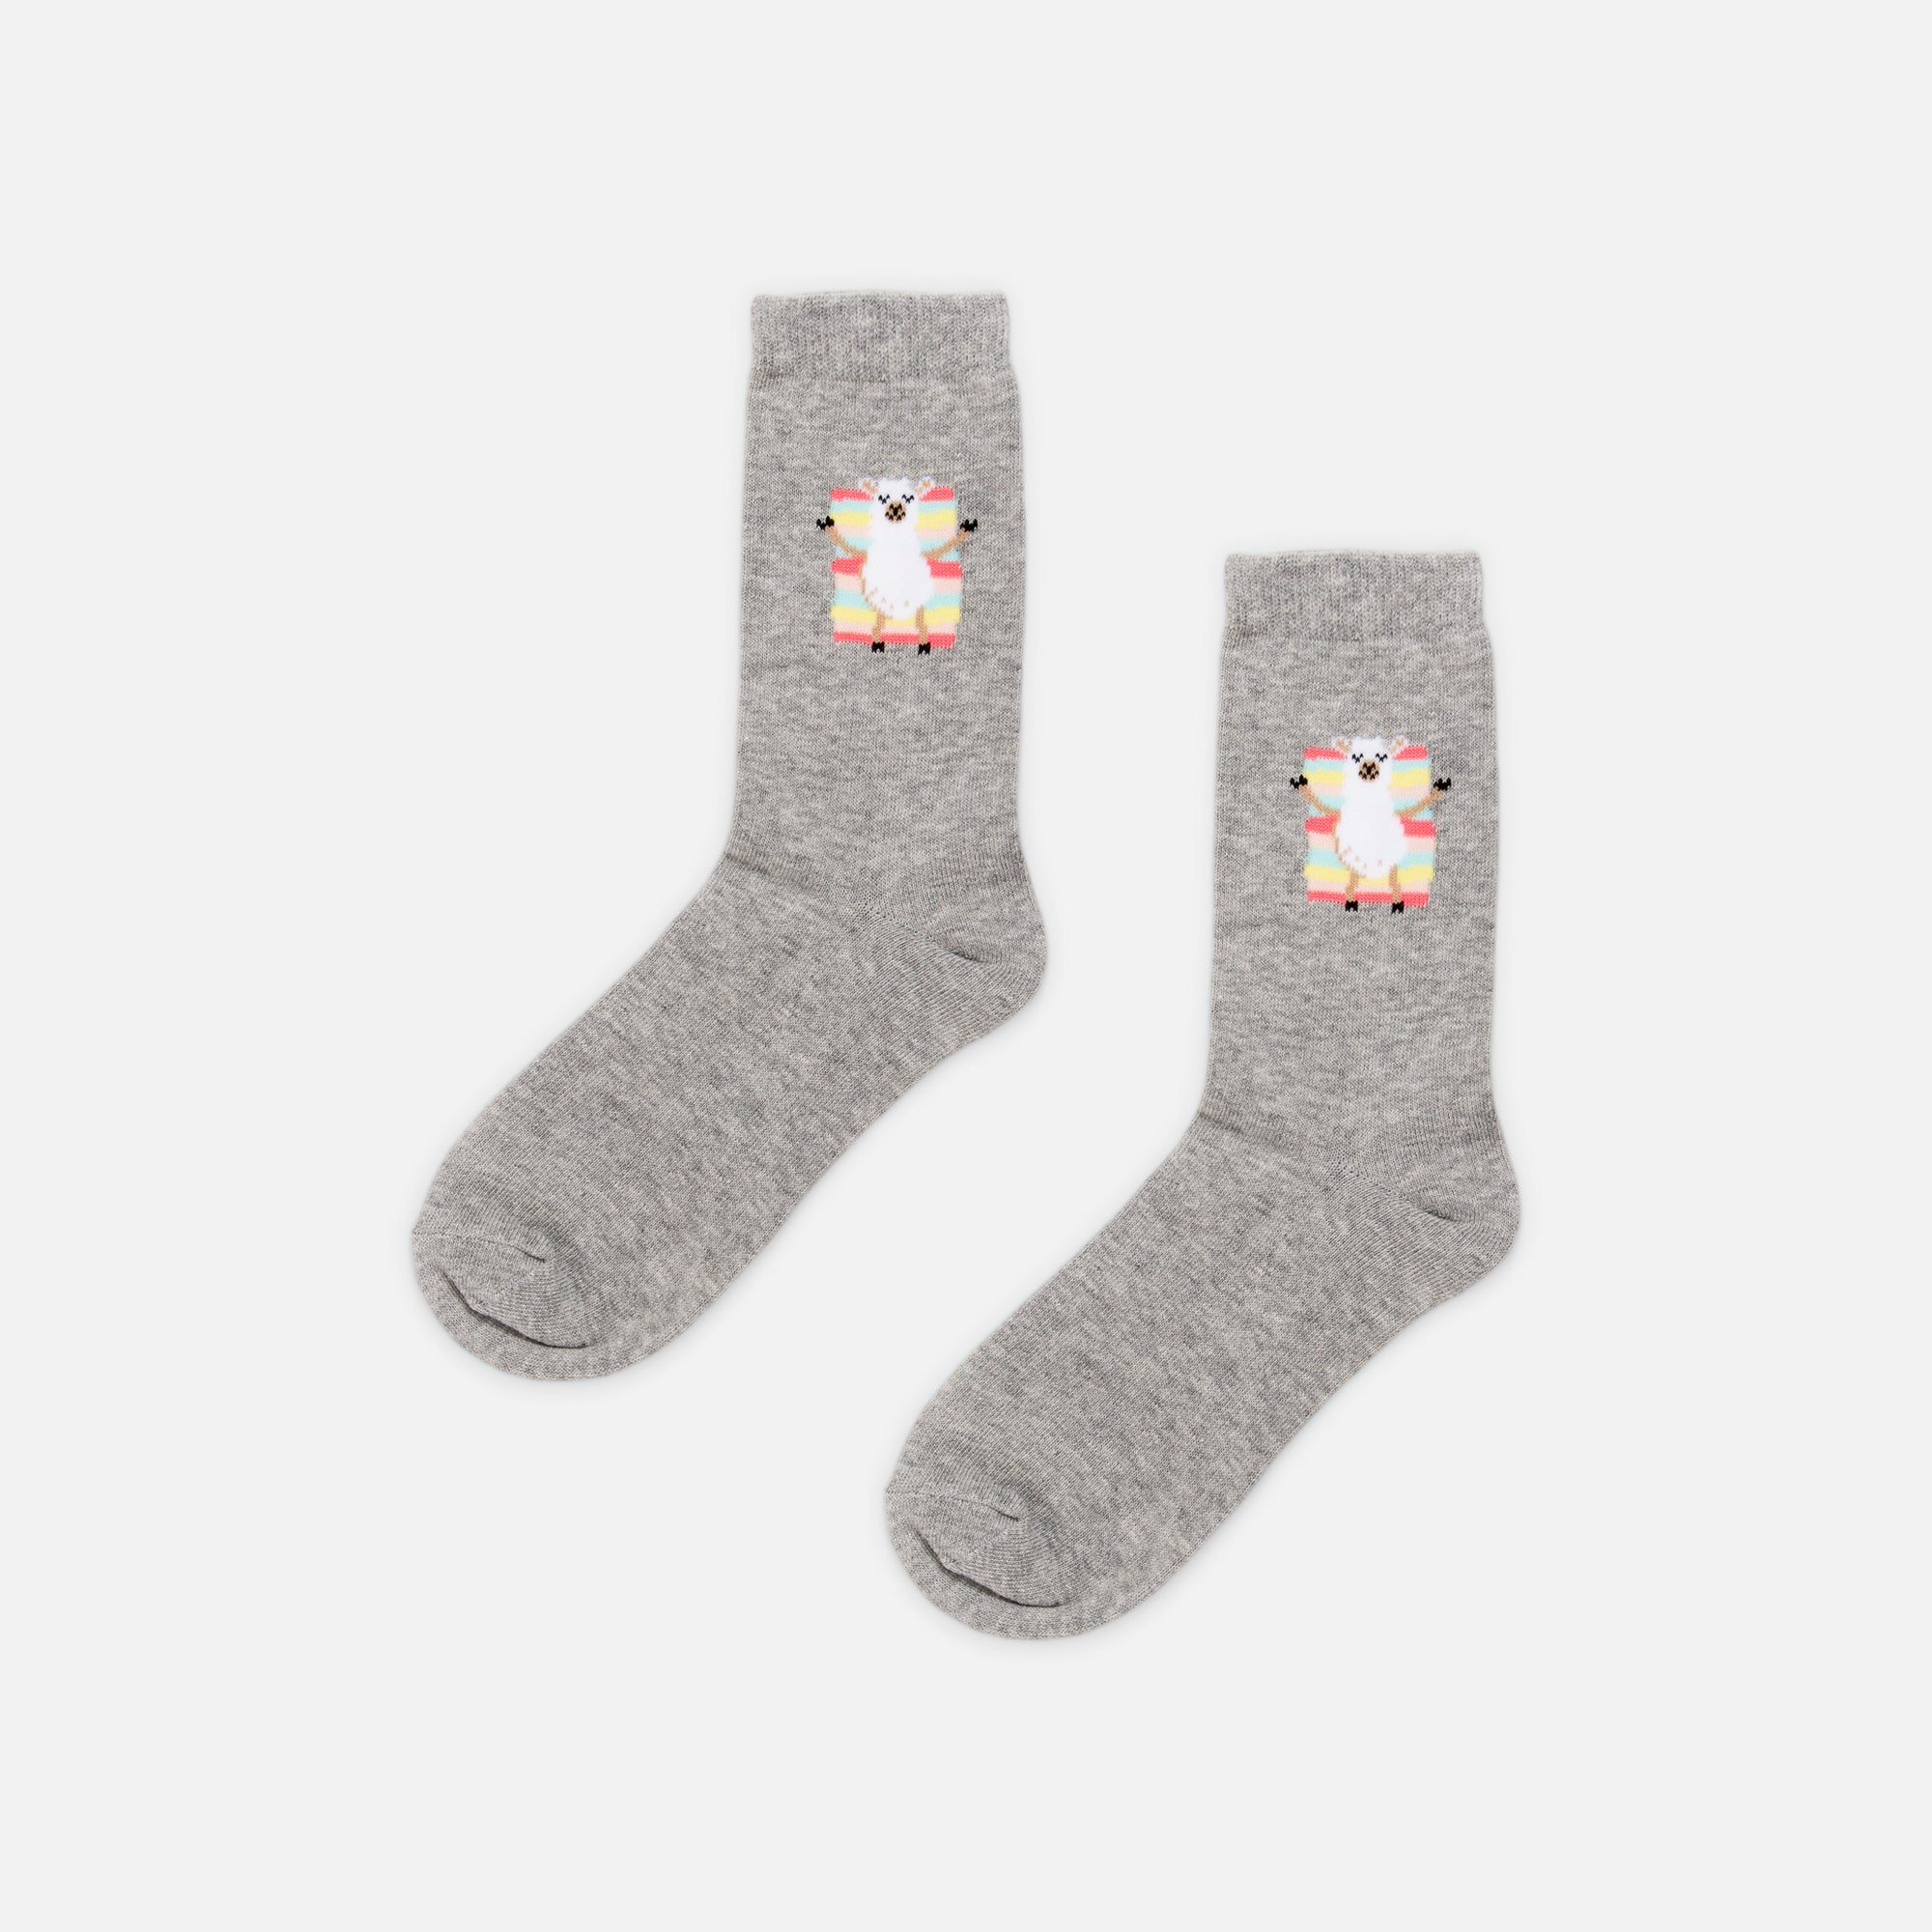 Grey socks with llama